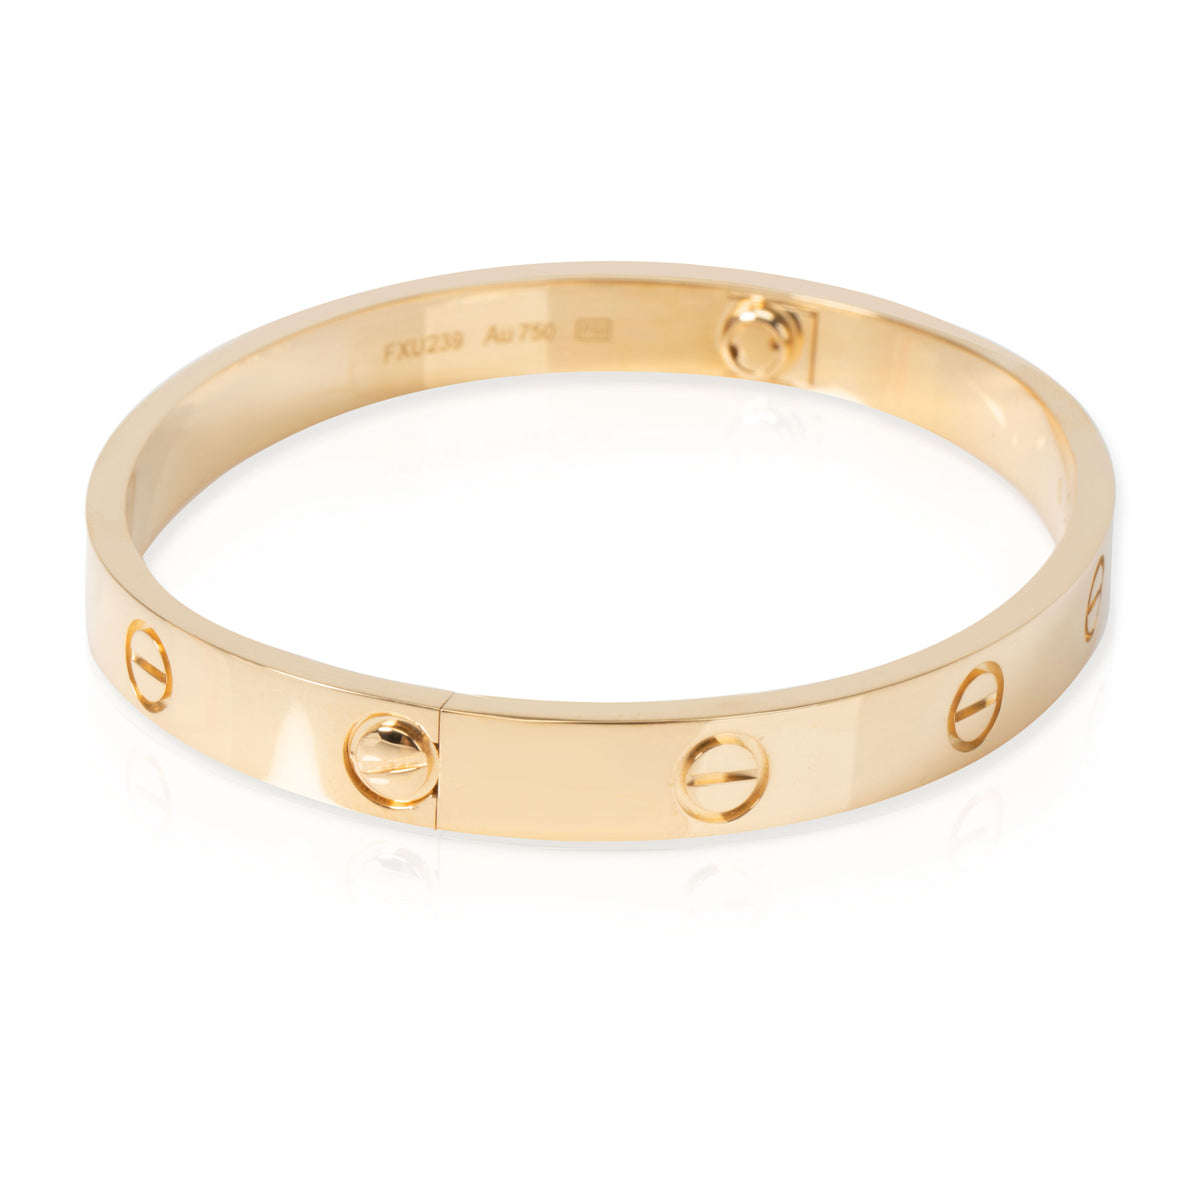 Cartier Love Bracelet in 18K Yellow Gold Size 17